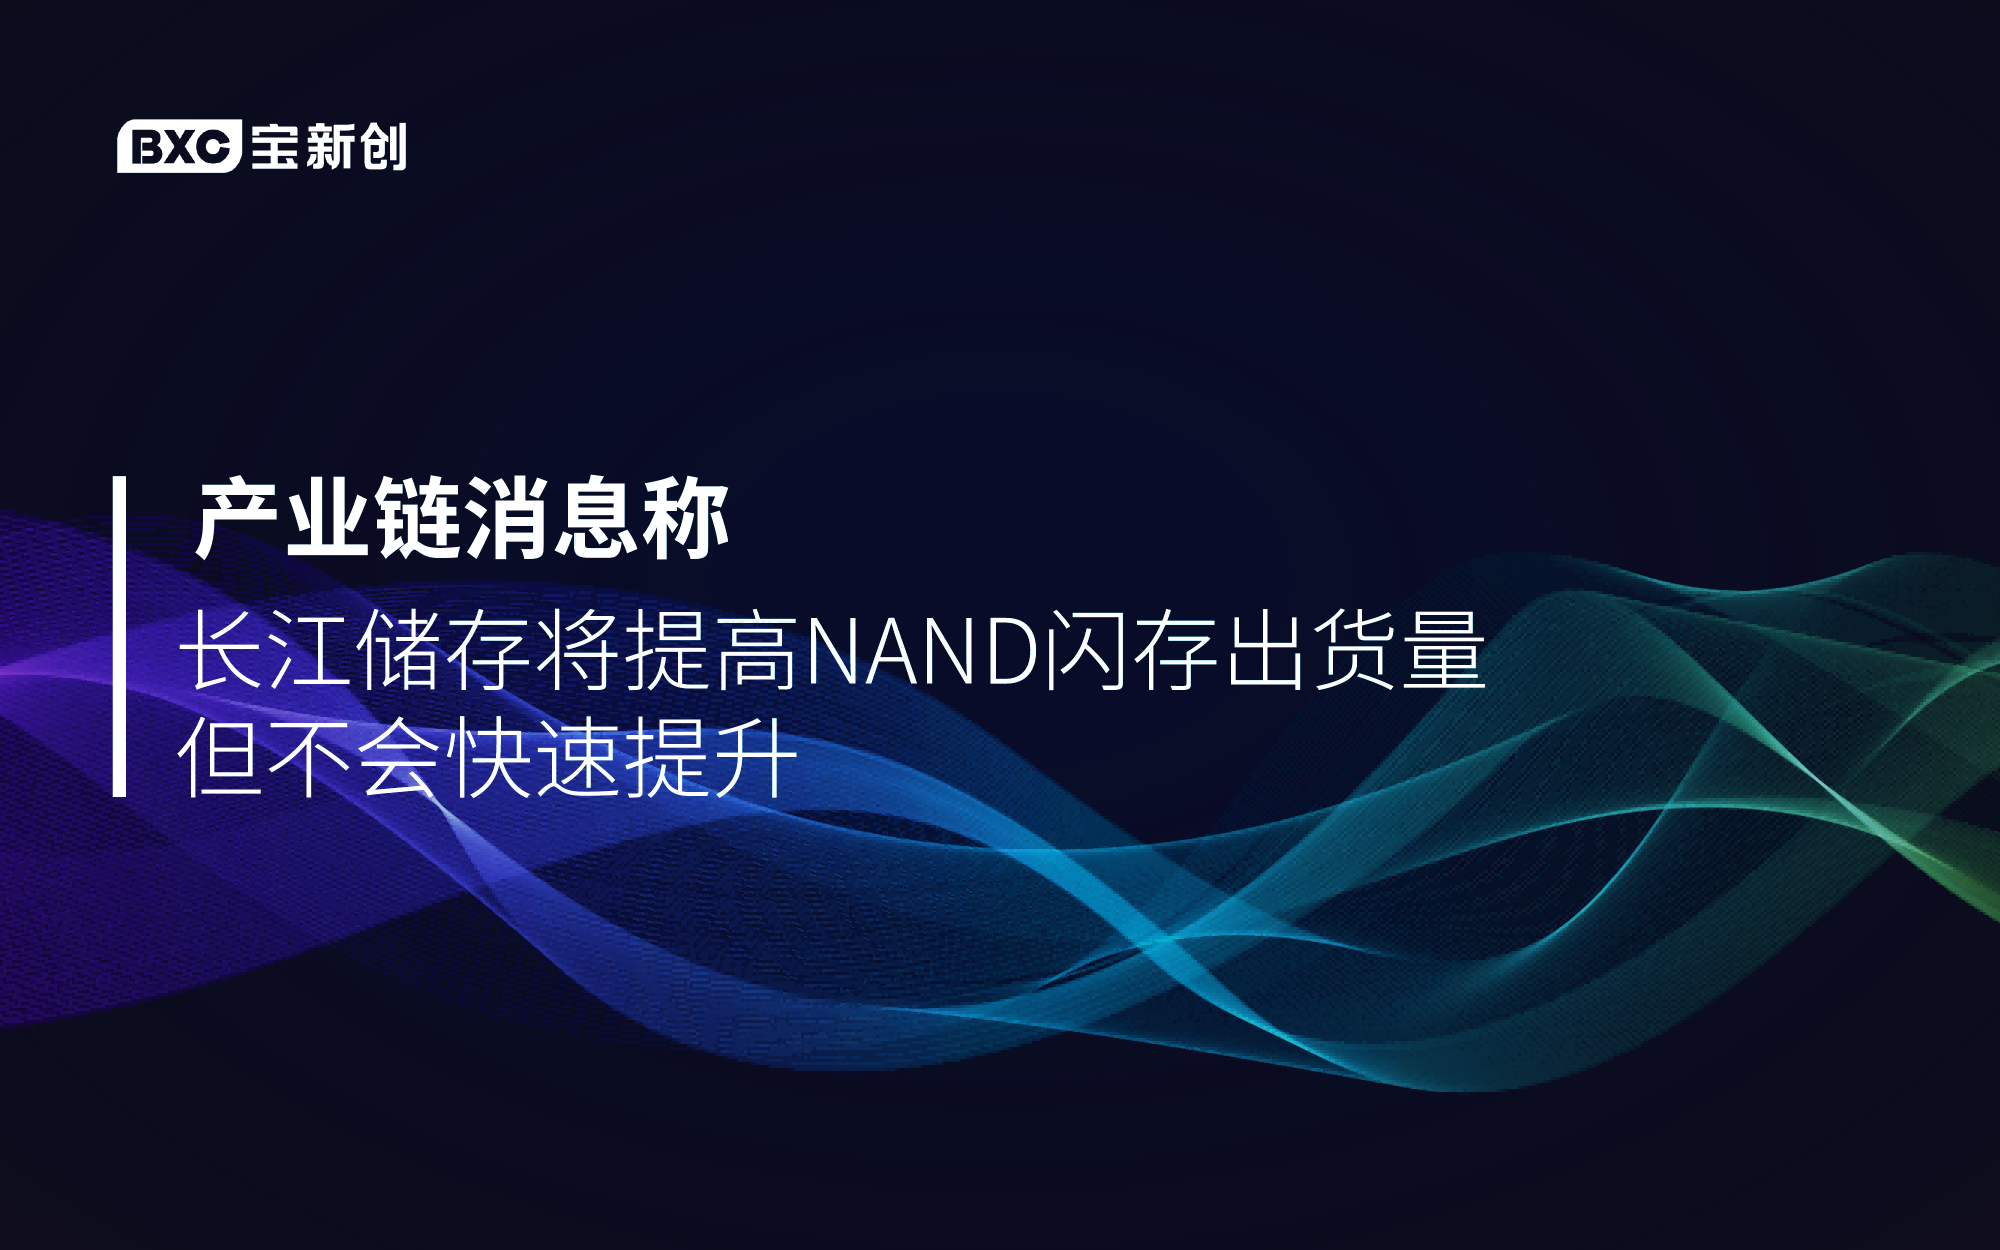 产业链消息称长江存储将提高NAND闪存出货量 但不会快速提升